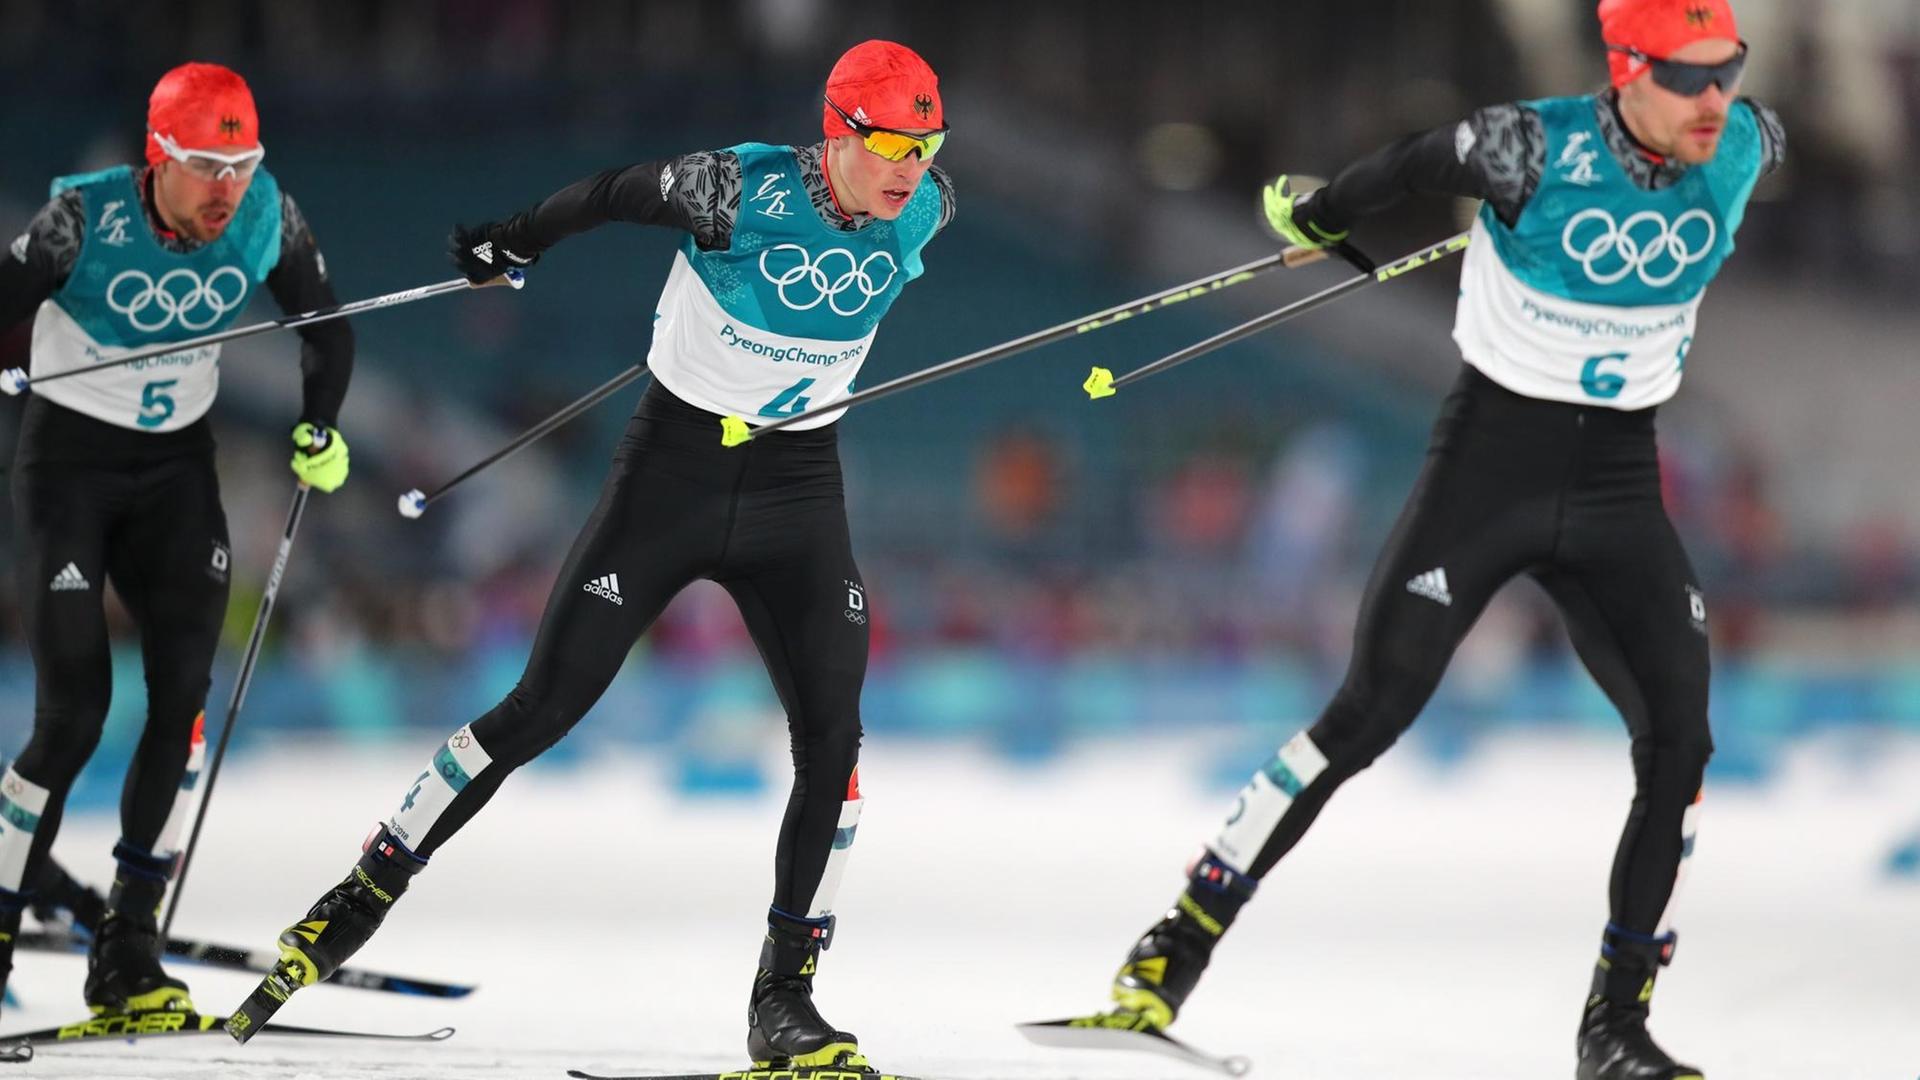 Nordische Kombination - Frauen nicht im Olympia-Programm 2026